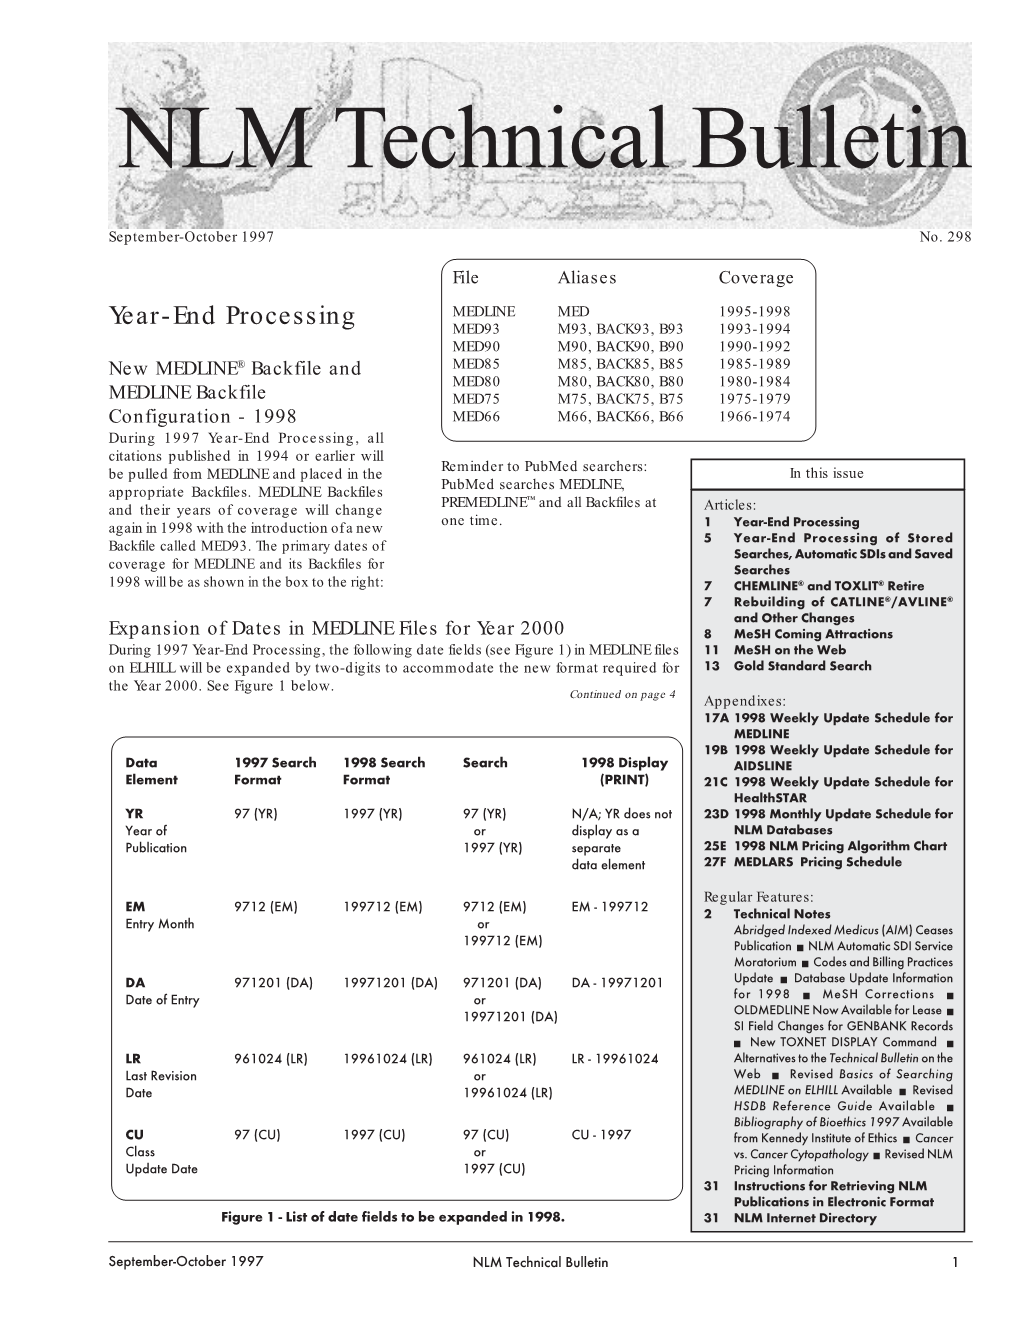 NLM Technical Bulletin, September-October 1997